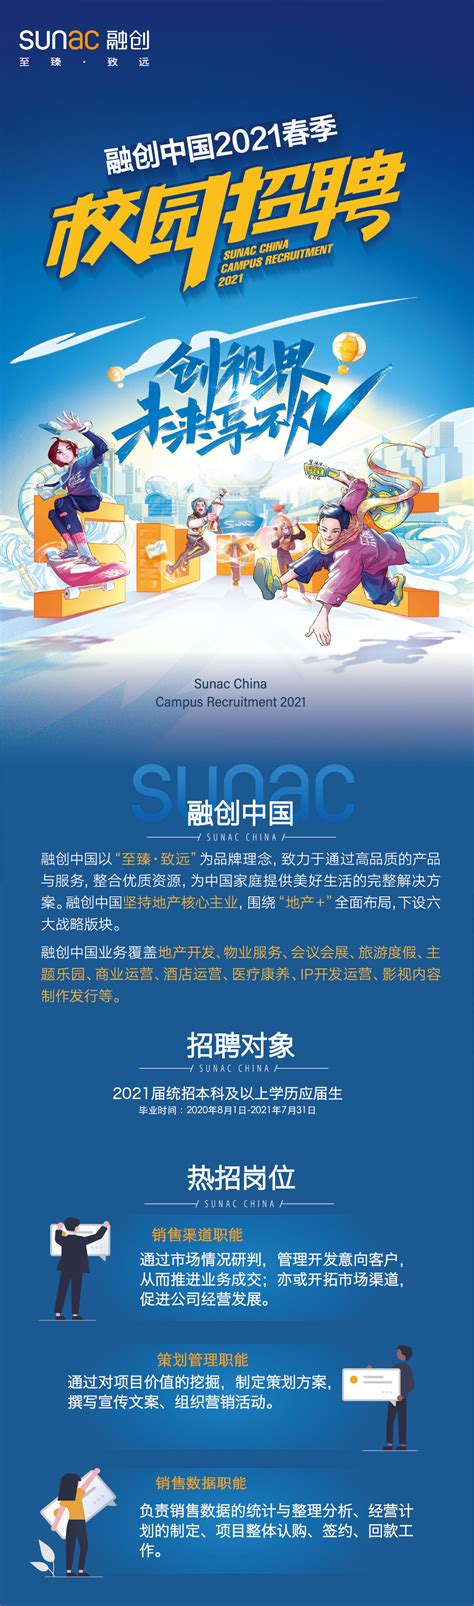 融创中国2021春季校园招聘正式启动 - 名企实习 我爱竞赛网